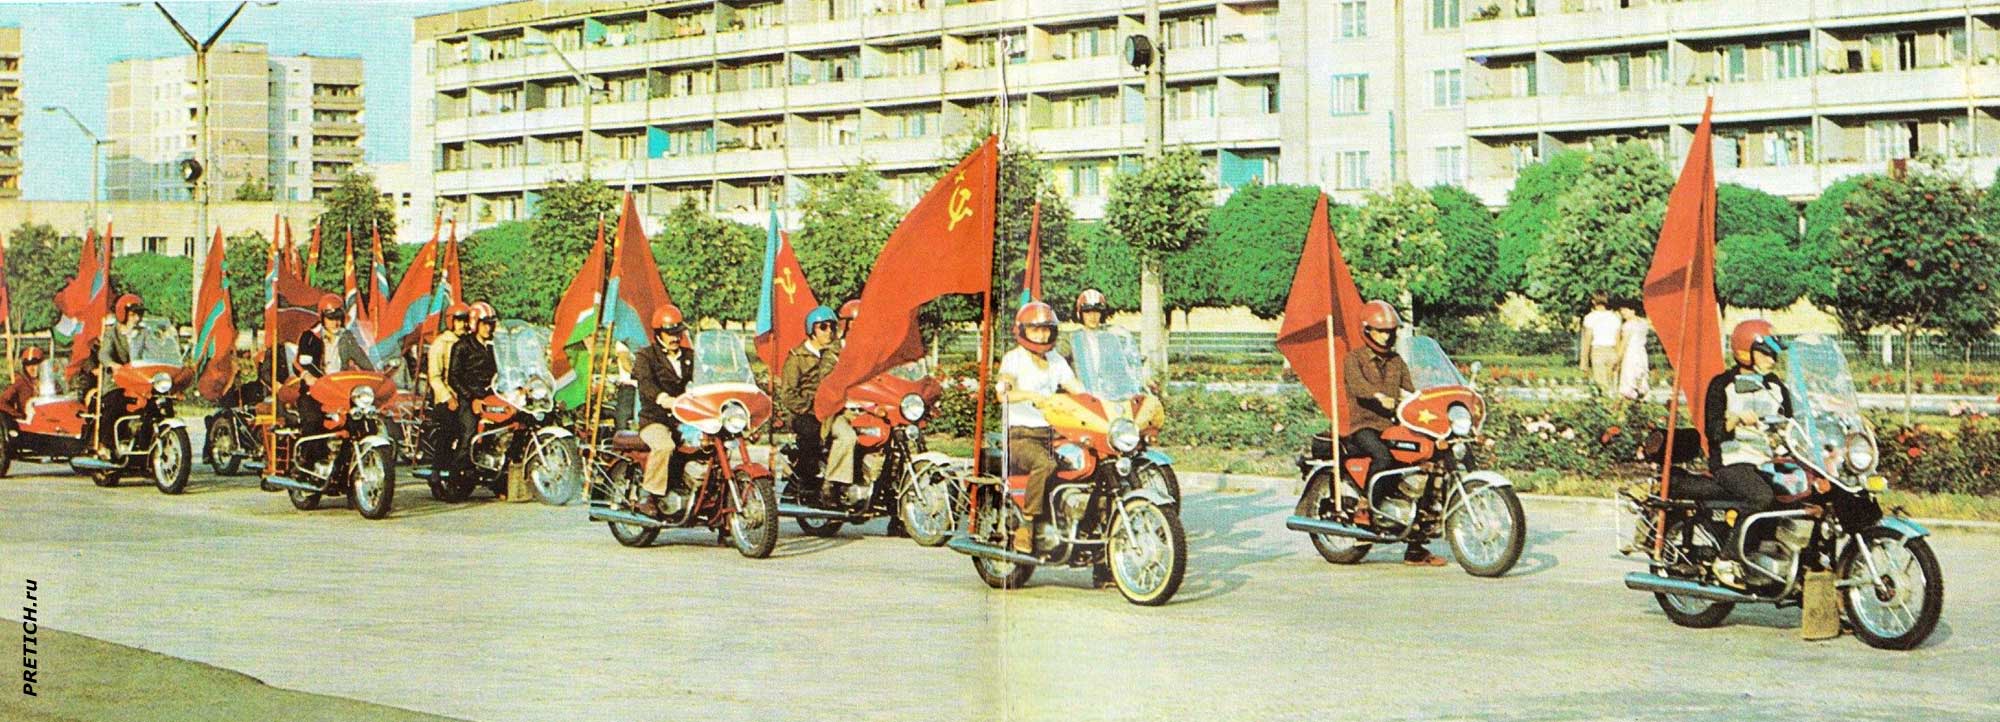 Припять празднует День советской молодежи, 1985 год